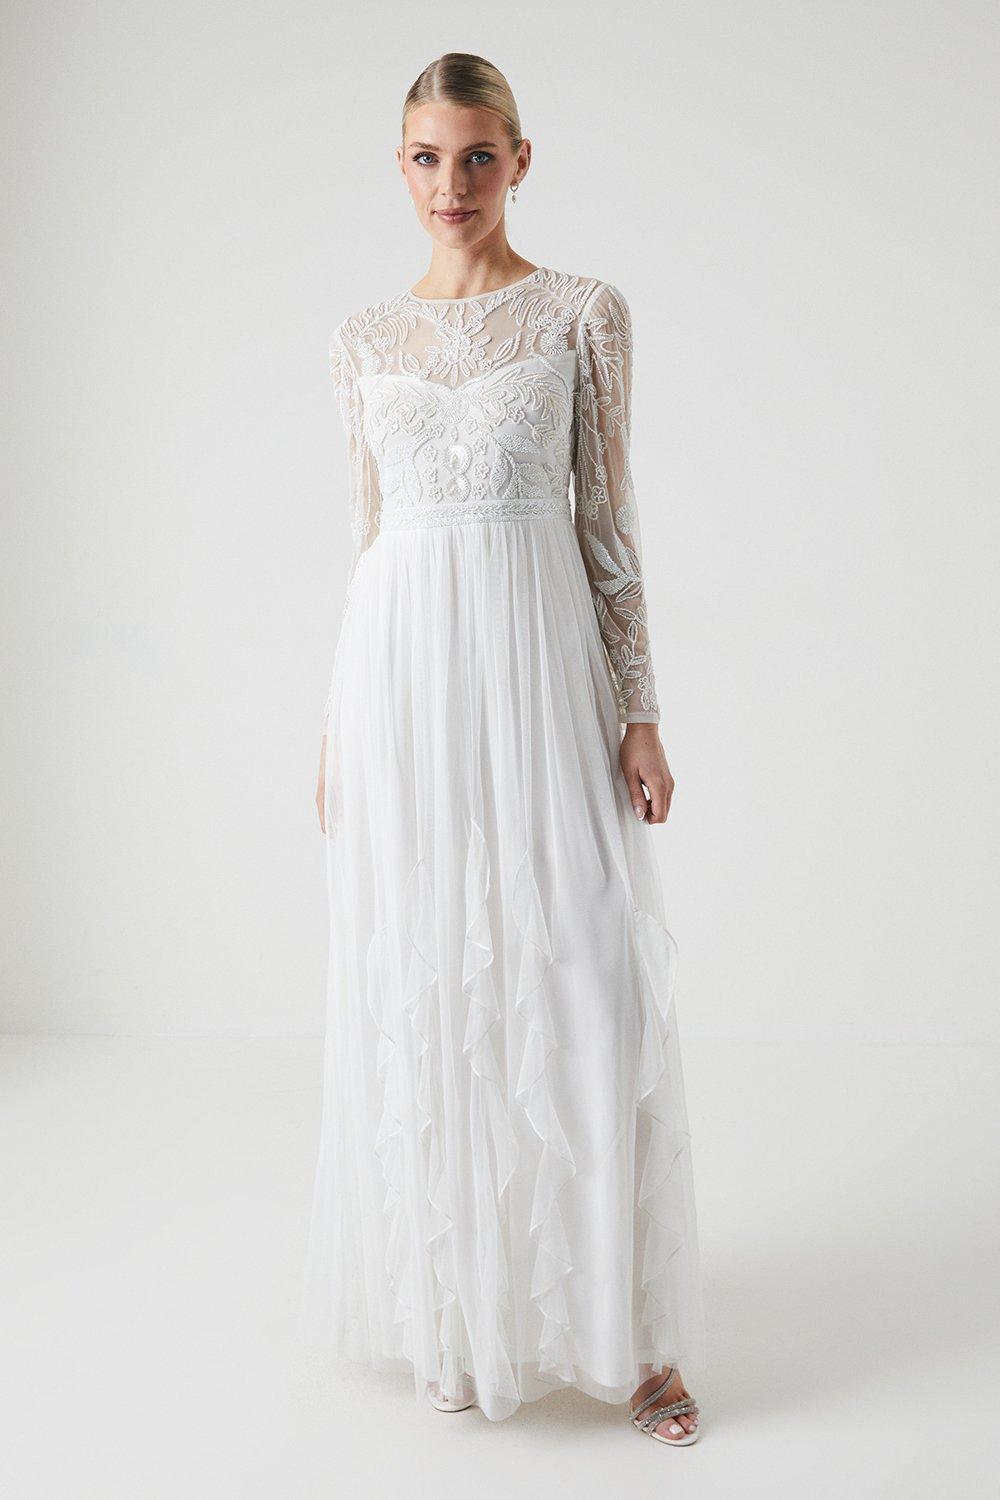 Ruffle Mesh And Embellished Wedding Dress - Ivory